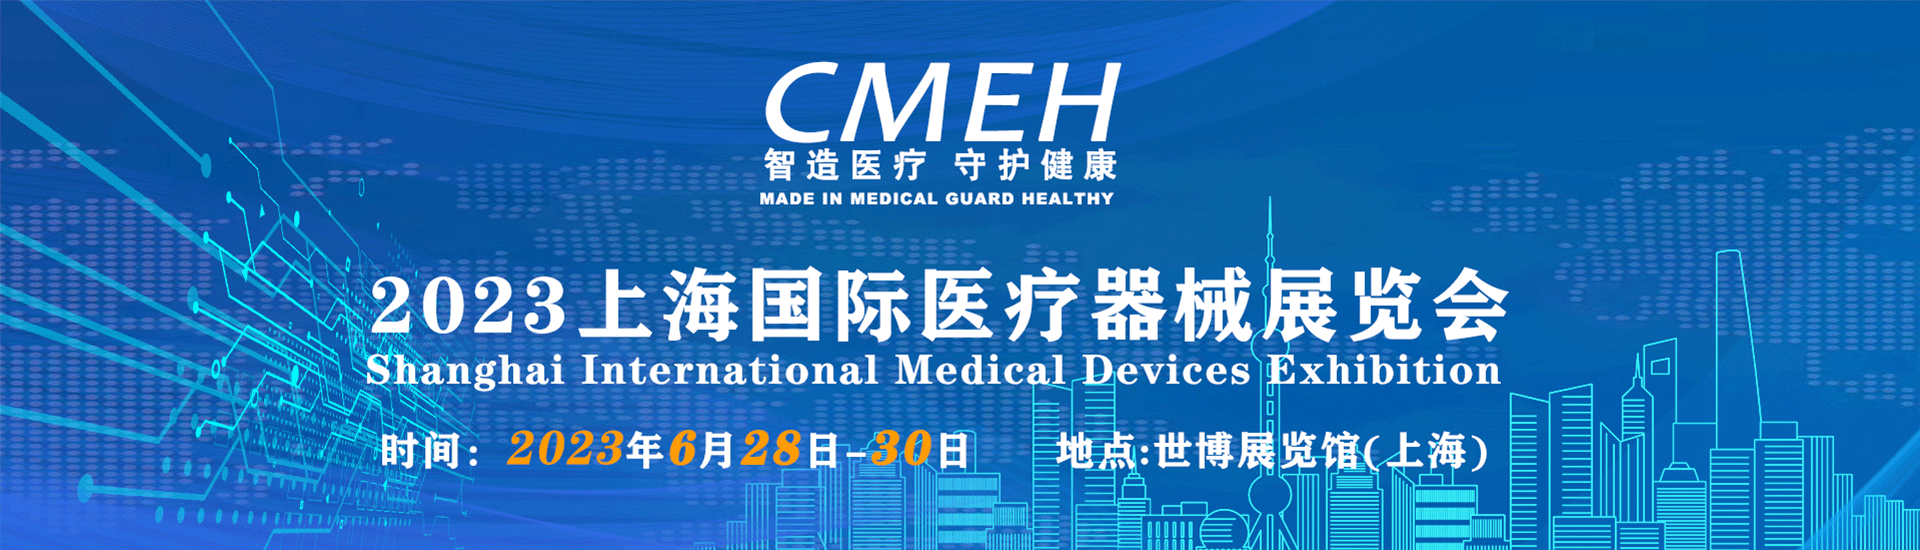 医疗设备博览会-cmeh中国国际医疗器械博览会